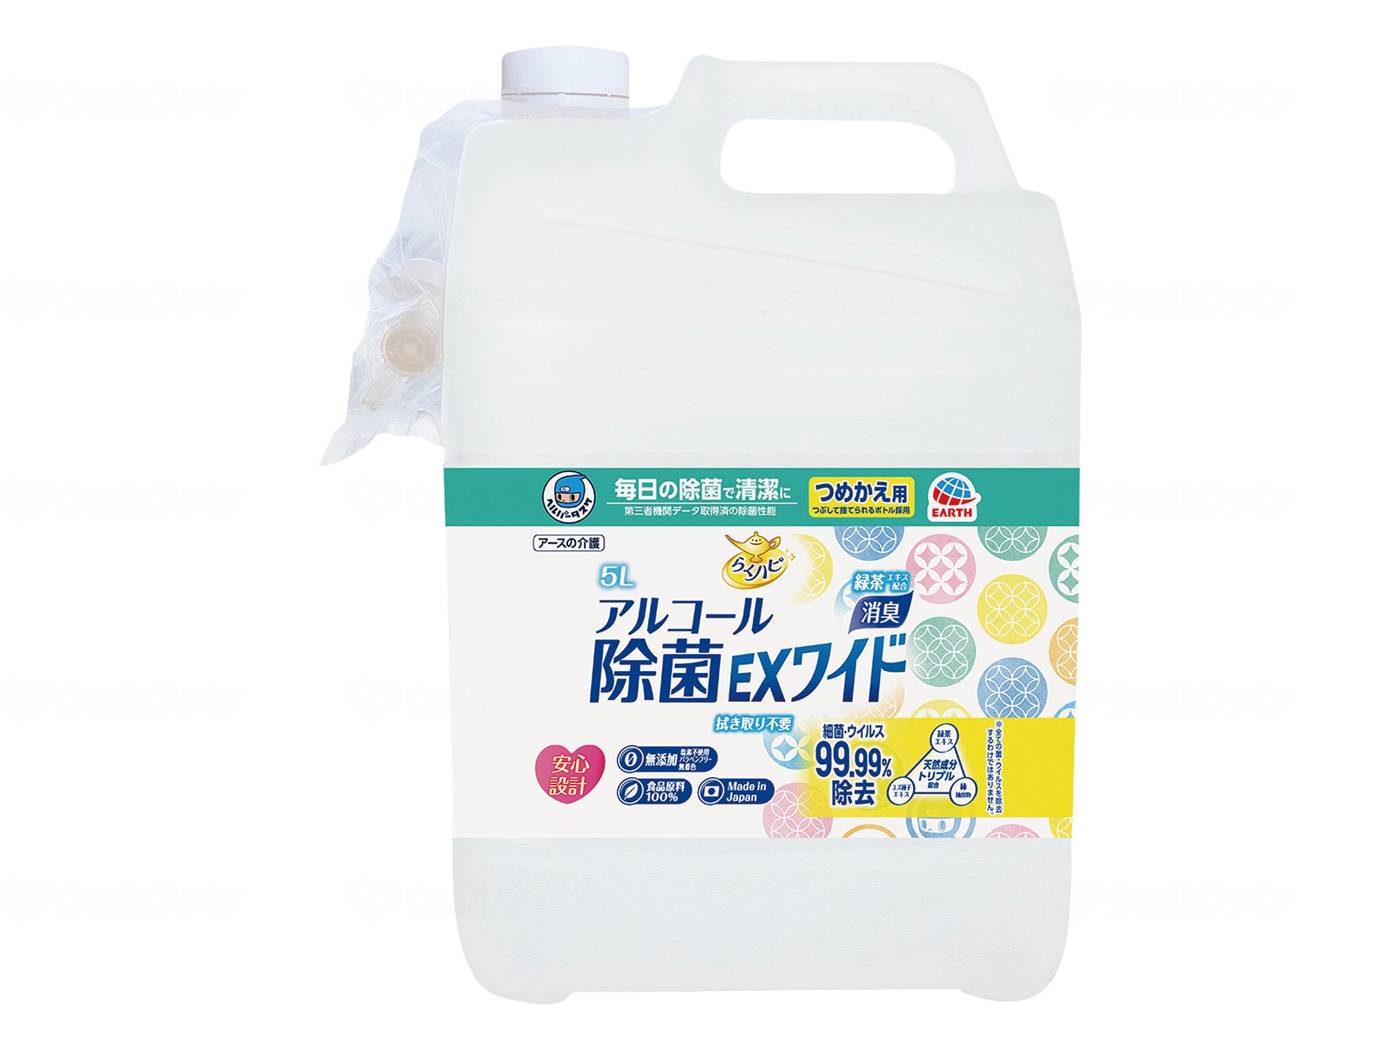 ヘルパータスケ ラクハピアルコール除菌EXワイド ツメカエ/本/5L 入浴用品